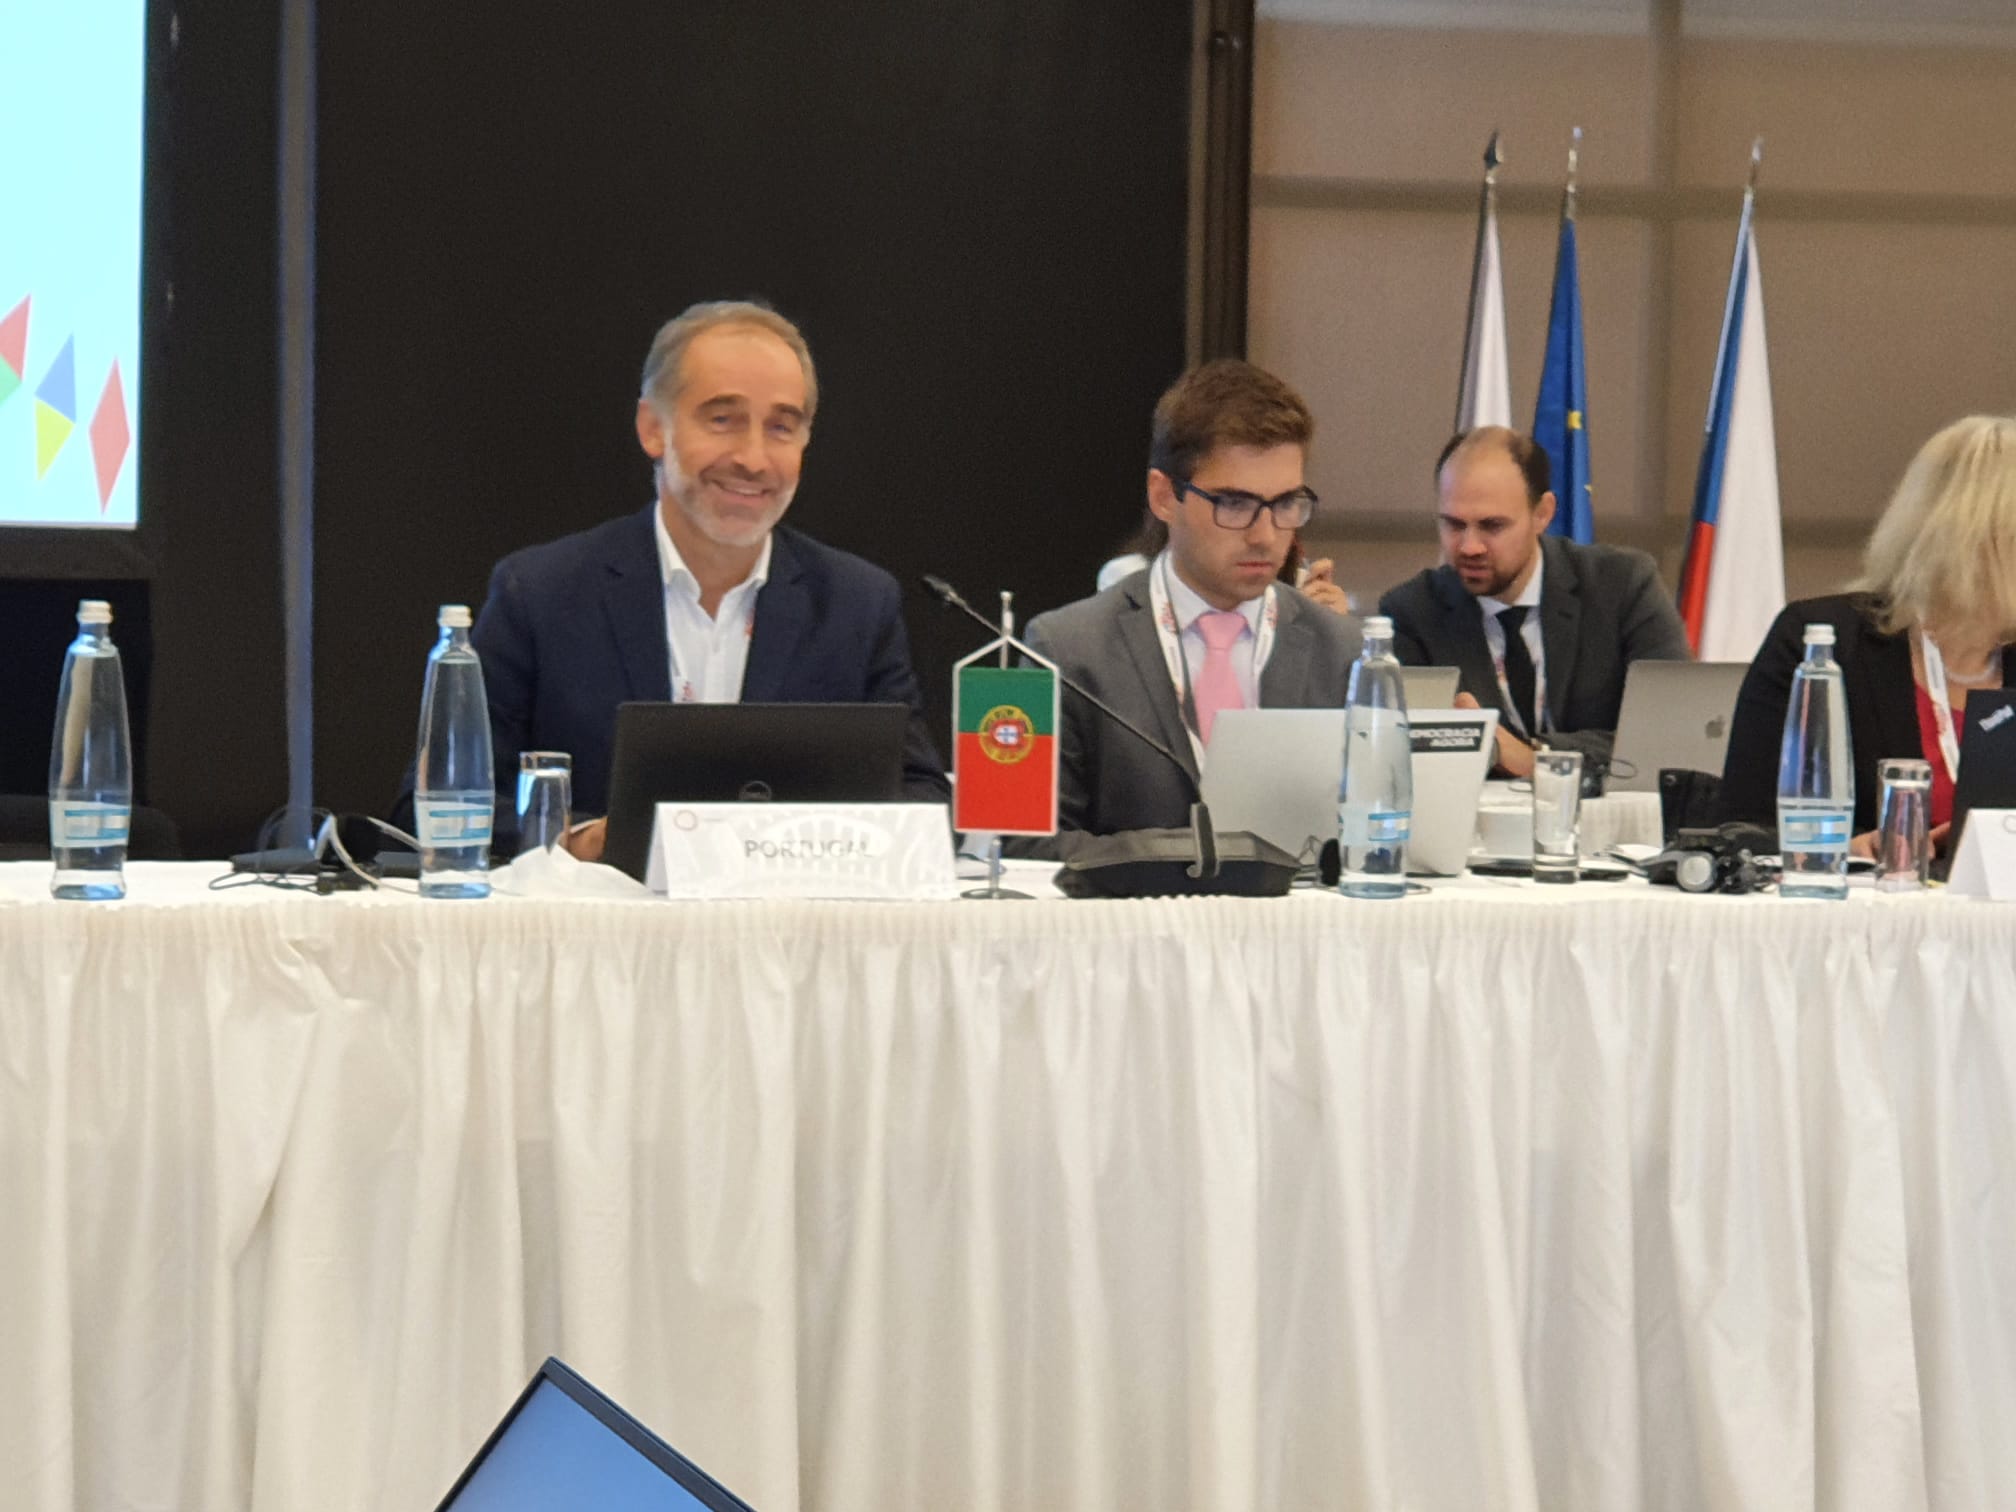 Delagação portuguesa à reunião de diretores-gerais de desporto da UE, com destaque para Vitor Pataco, Presidente do IPDJ